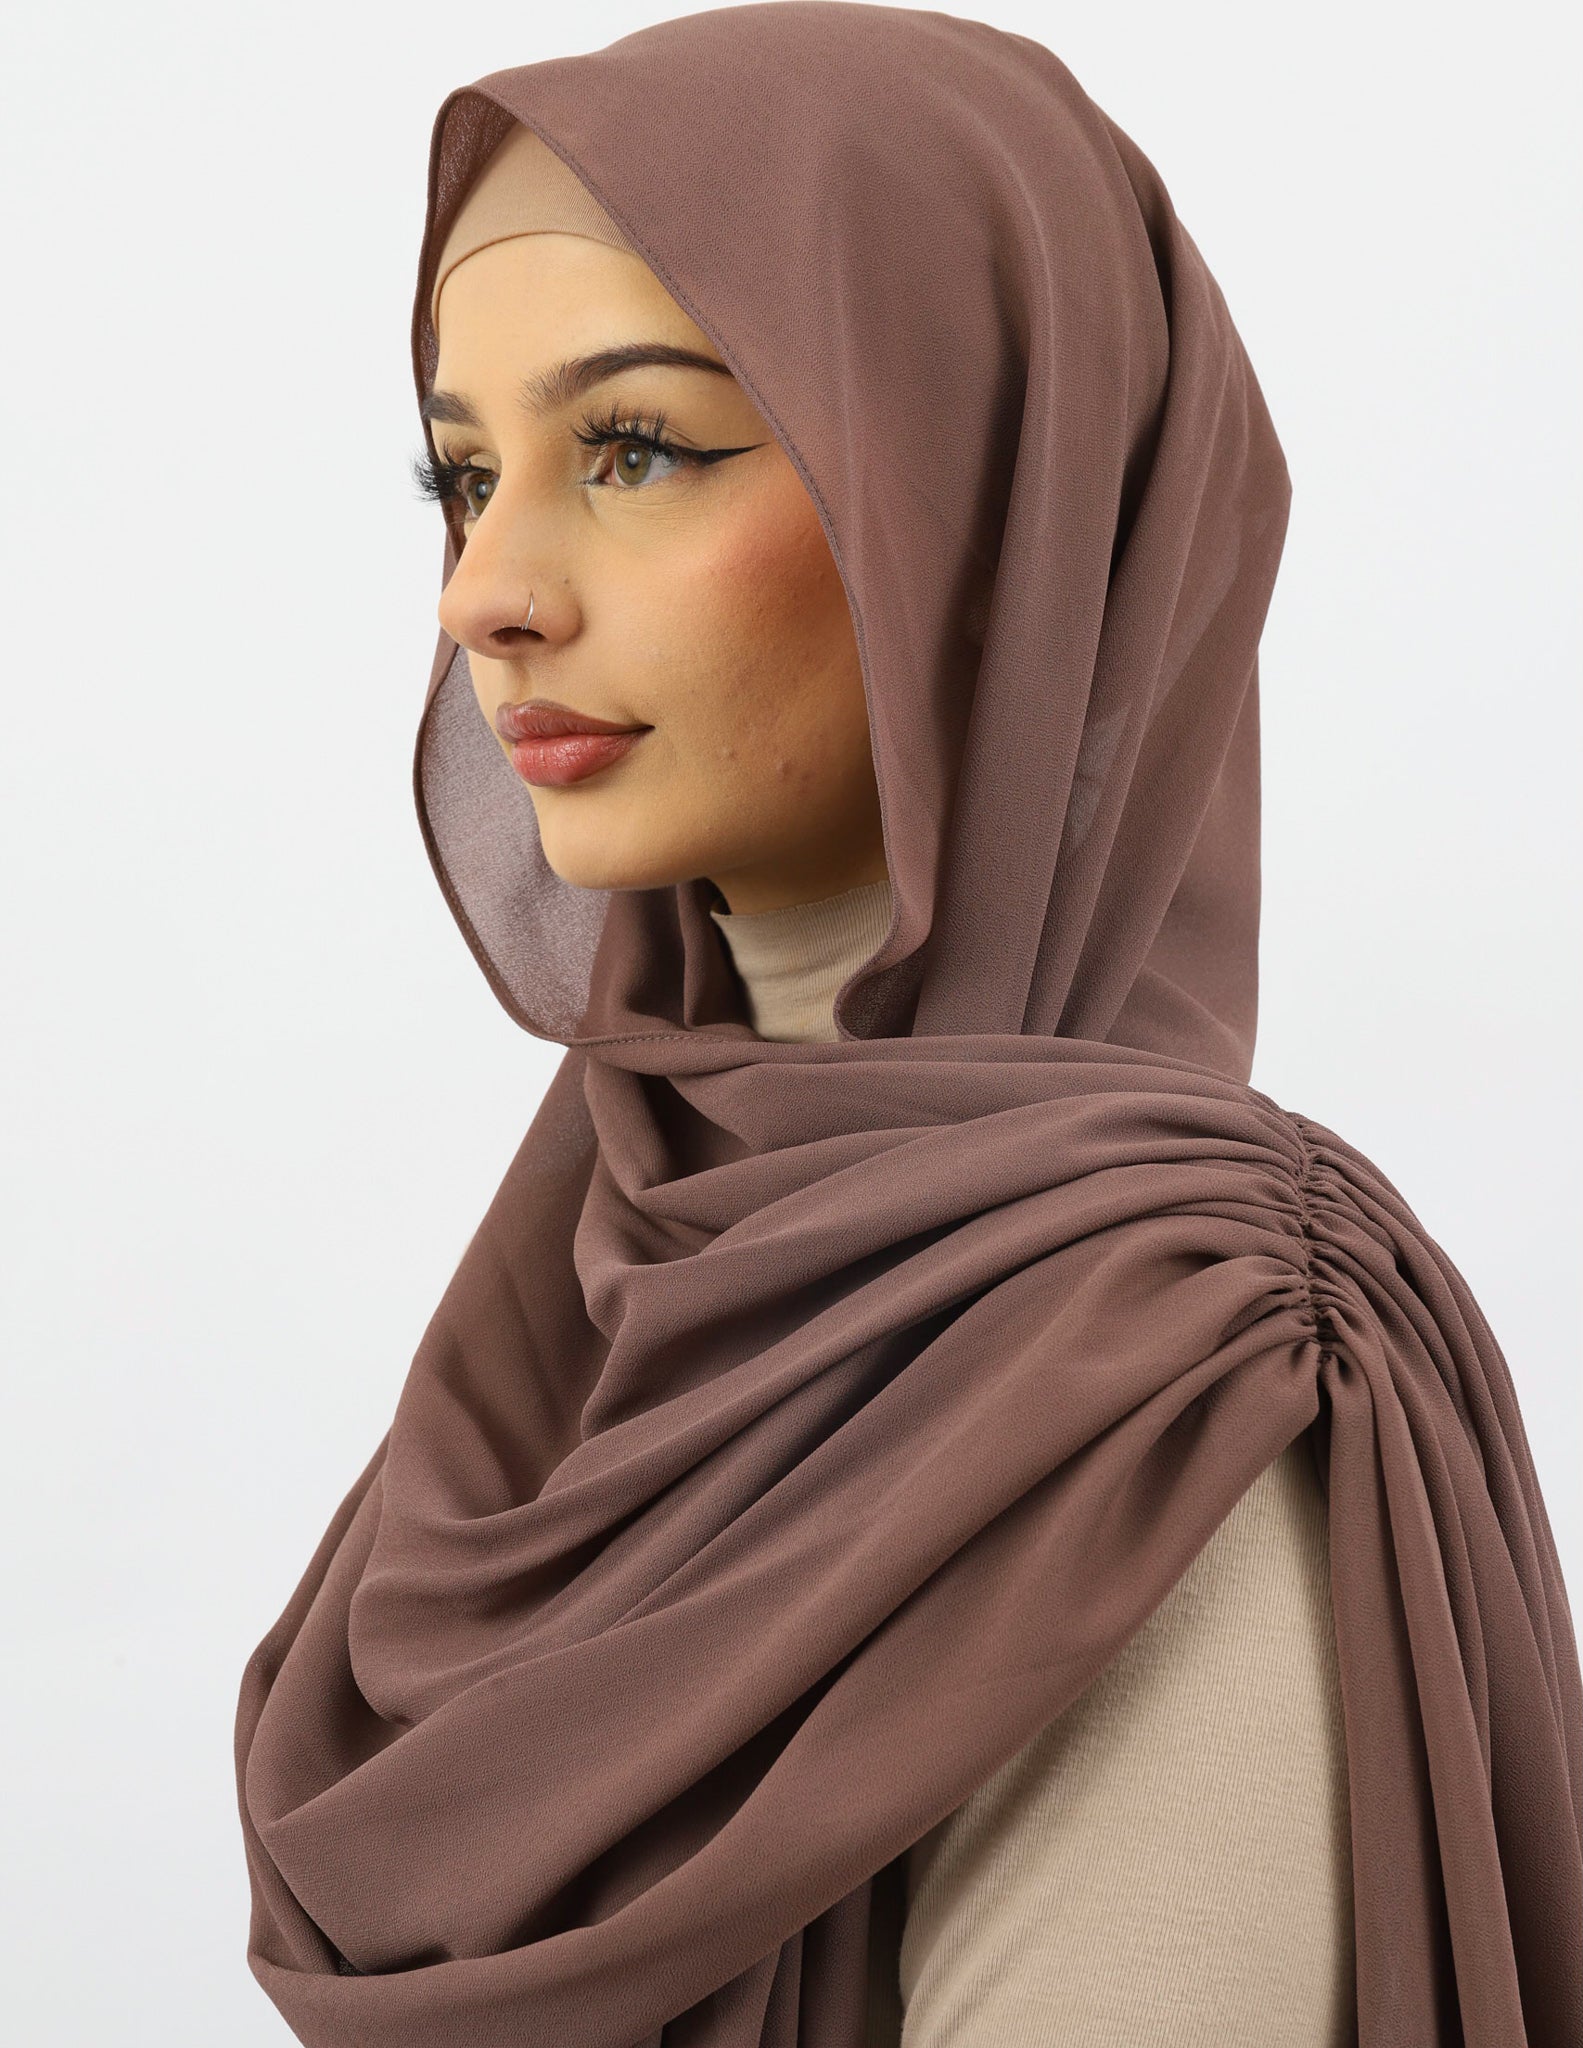 WJ158Taupe-scarf-hijab